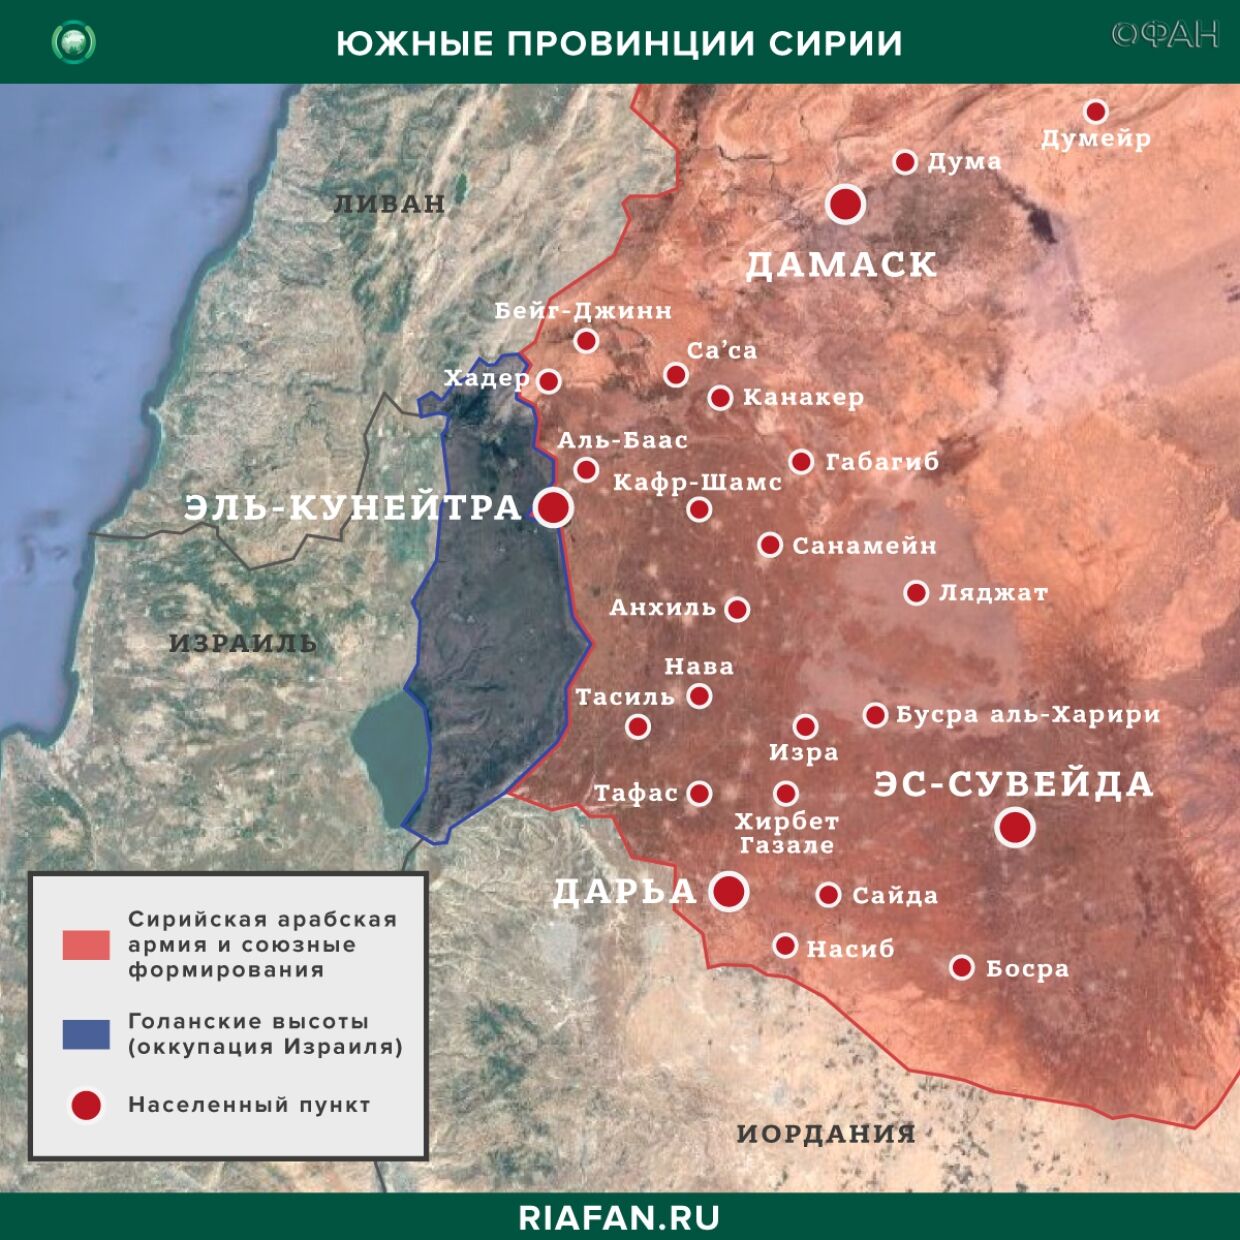 Сирия новости 21 мая 22.30: авиаудар ВВС международной коалиции в Дейр-эз-Зоре, провокации ХТШ в Хаме